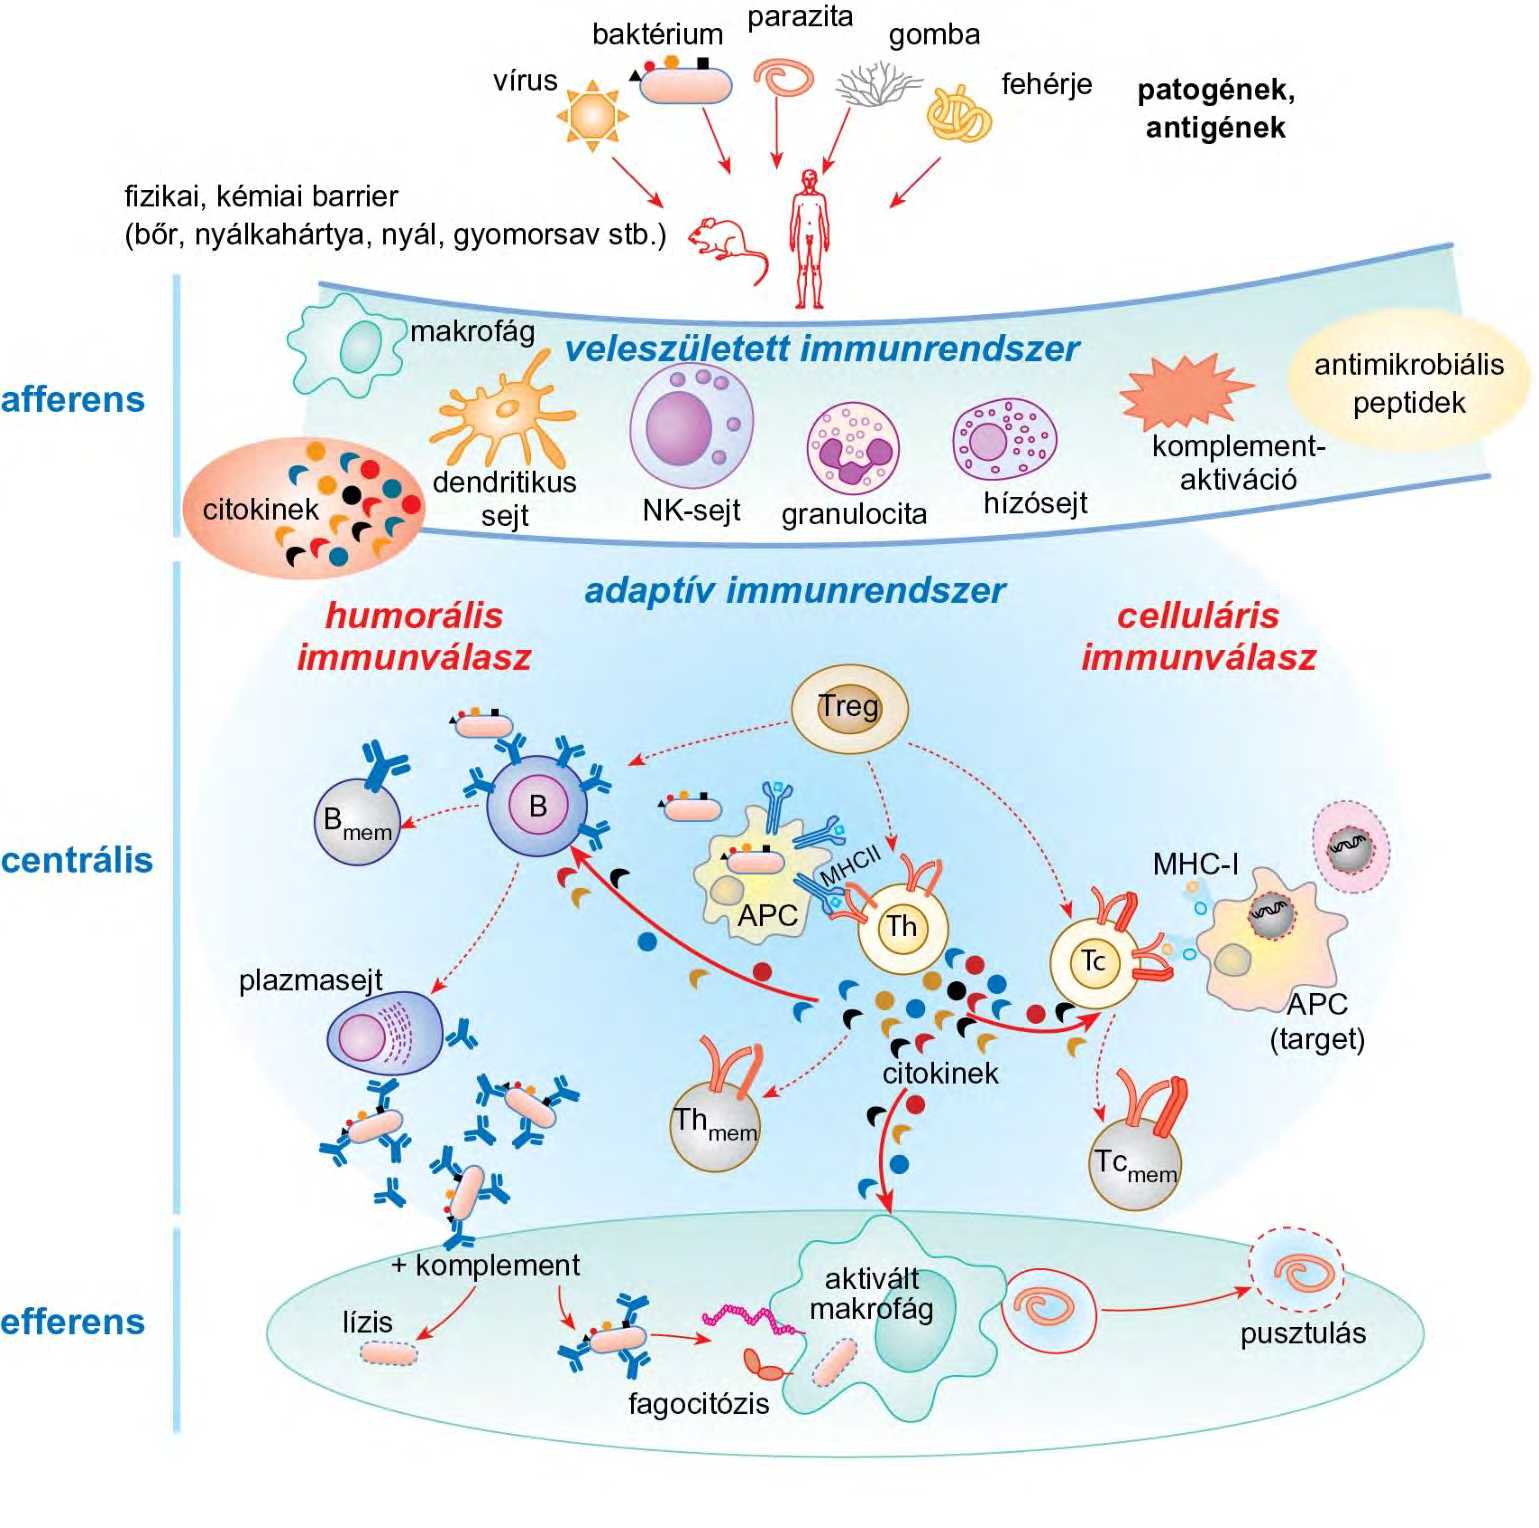 Az immunválasz kialakulása; a dendritikus sejtek (DC) döntő szerepe az adaptív immunválasz